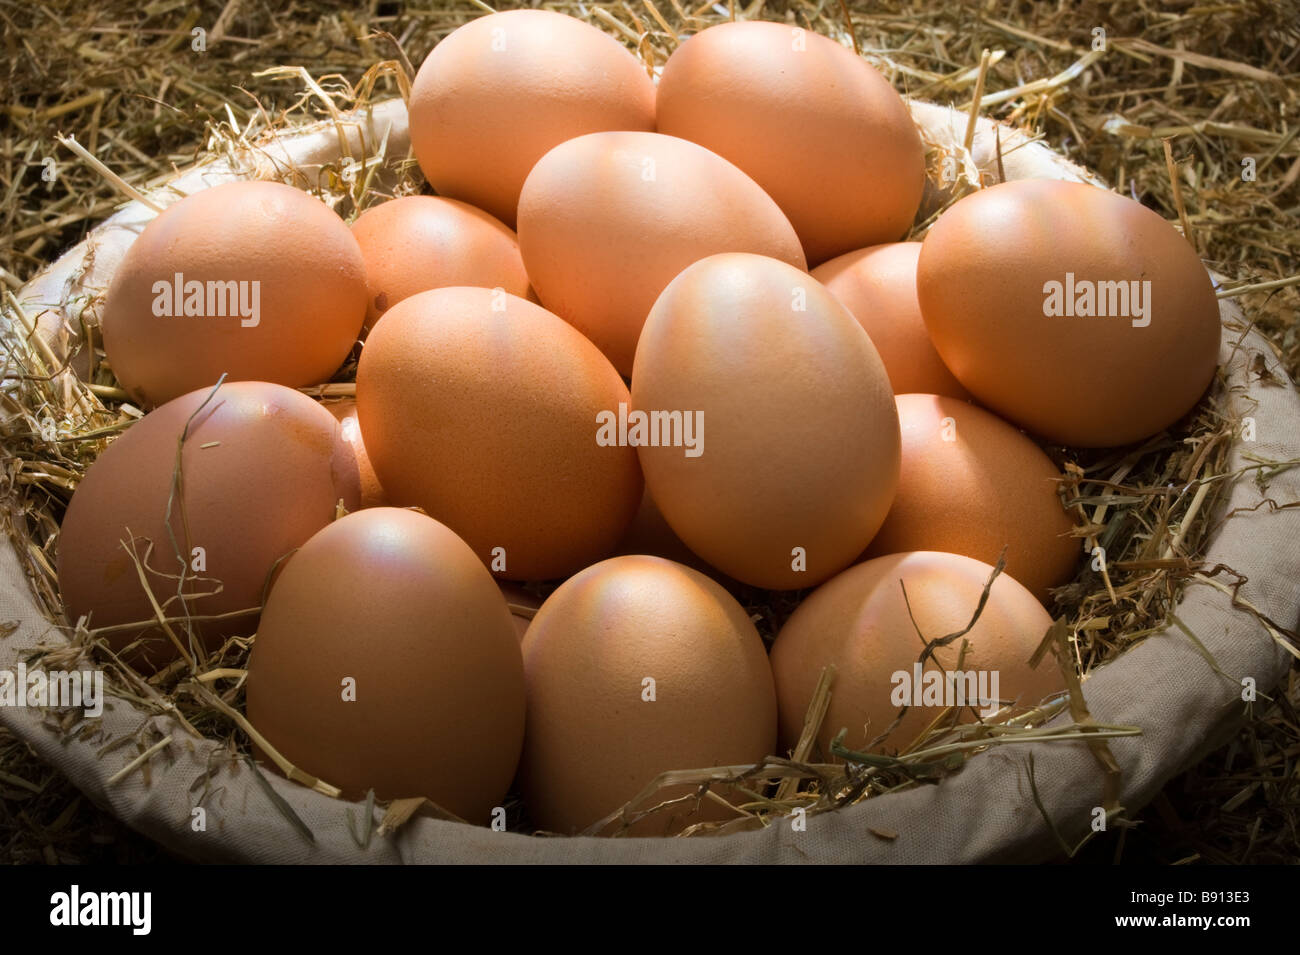 Brown, un surtido de huevos de gallina en una cesta sobre un fondo de paja Foto de stock